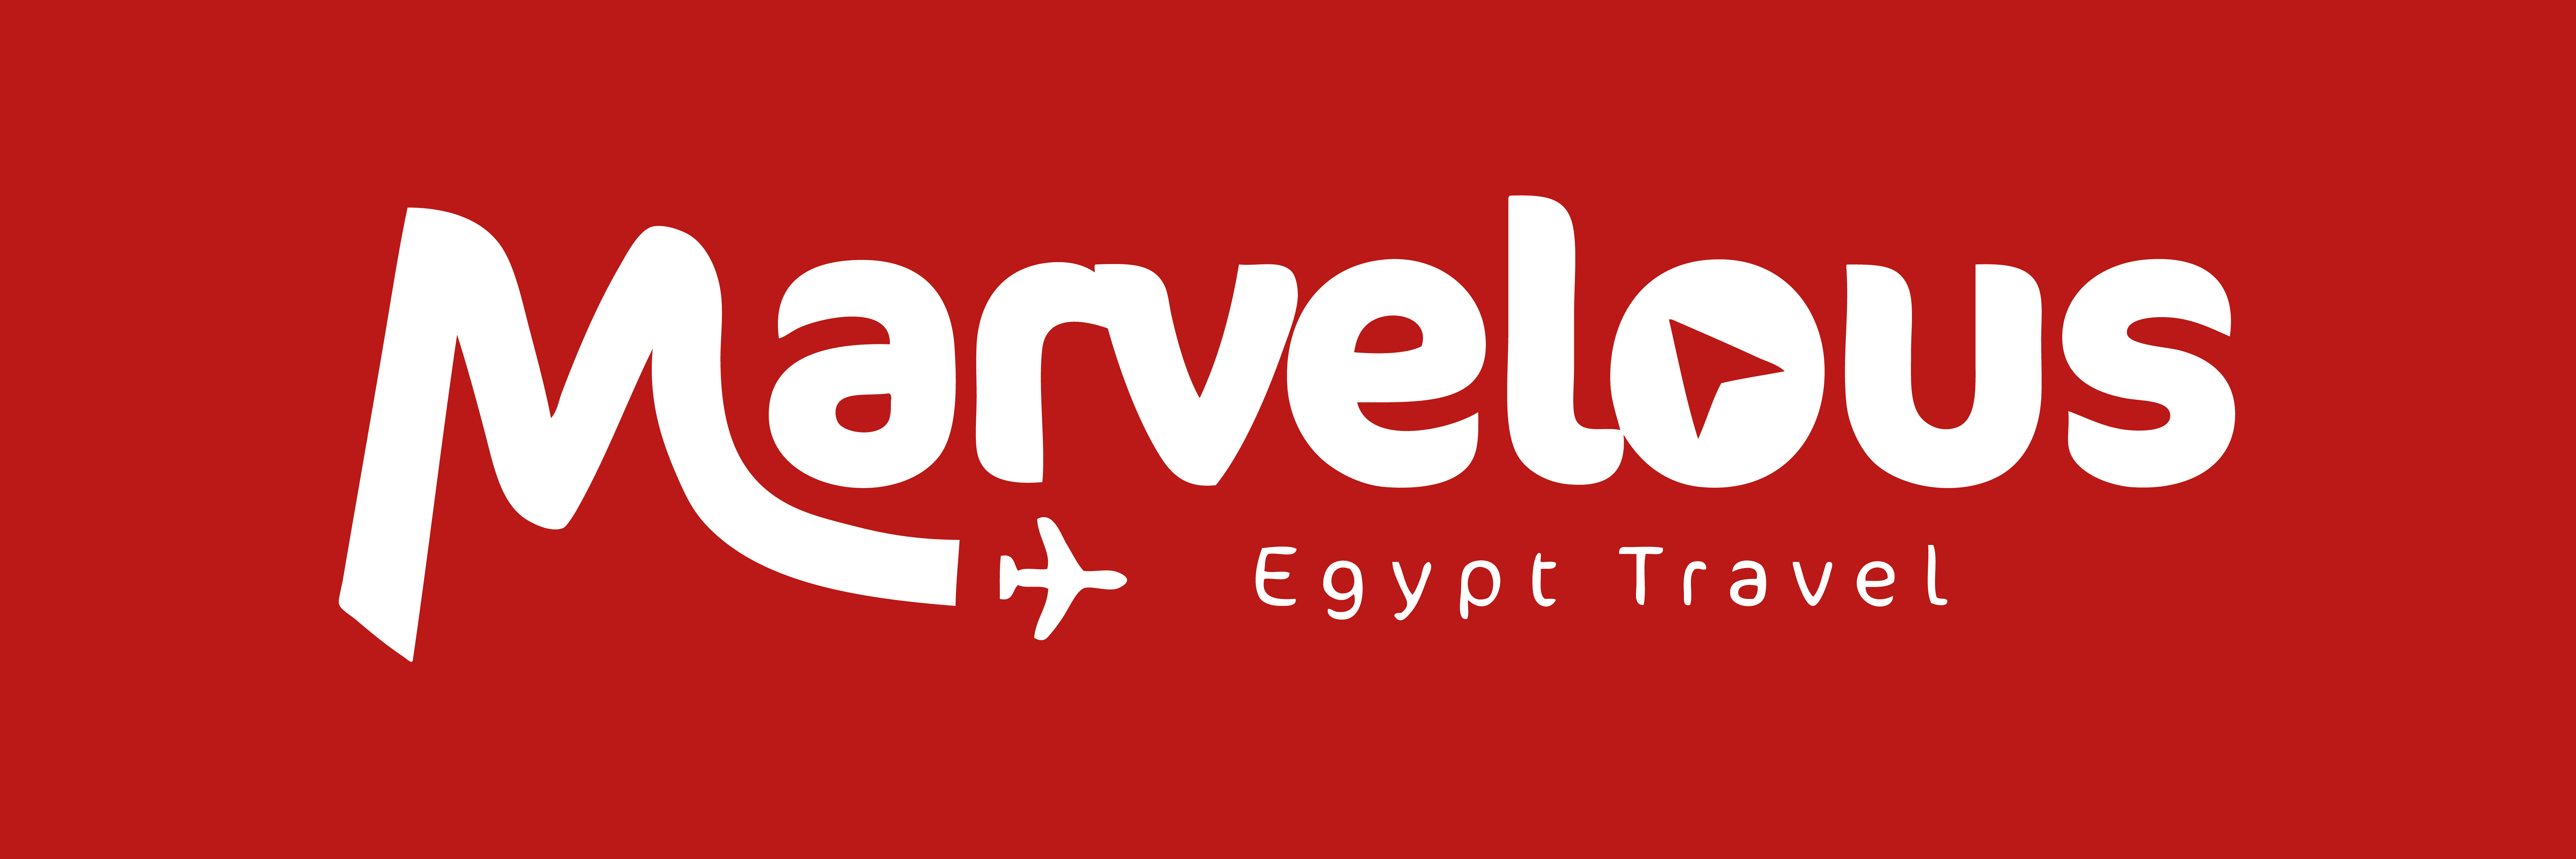 Marvelous Egypt Travel